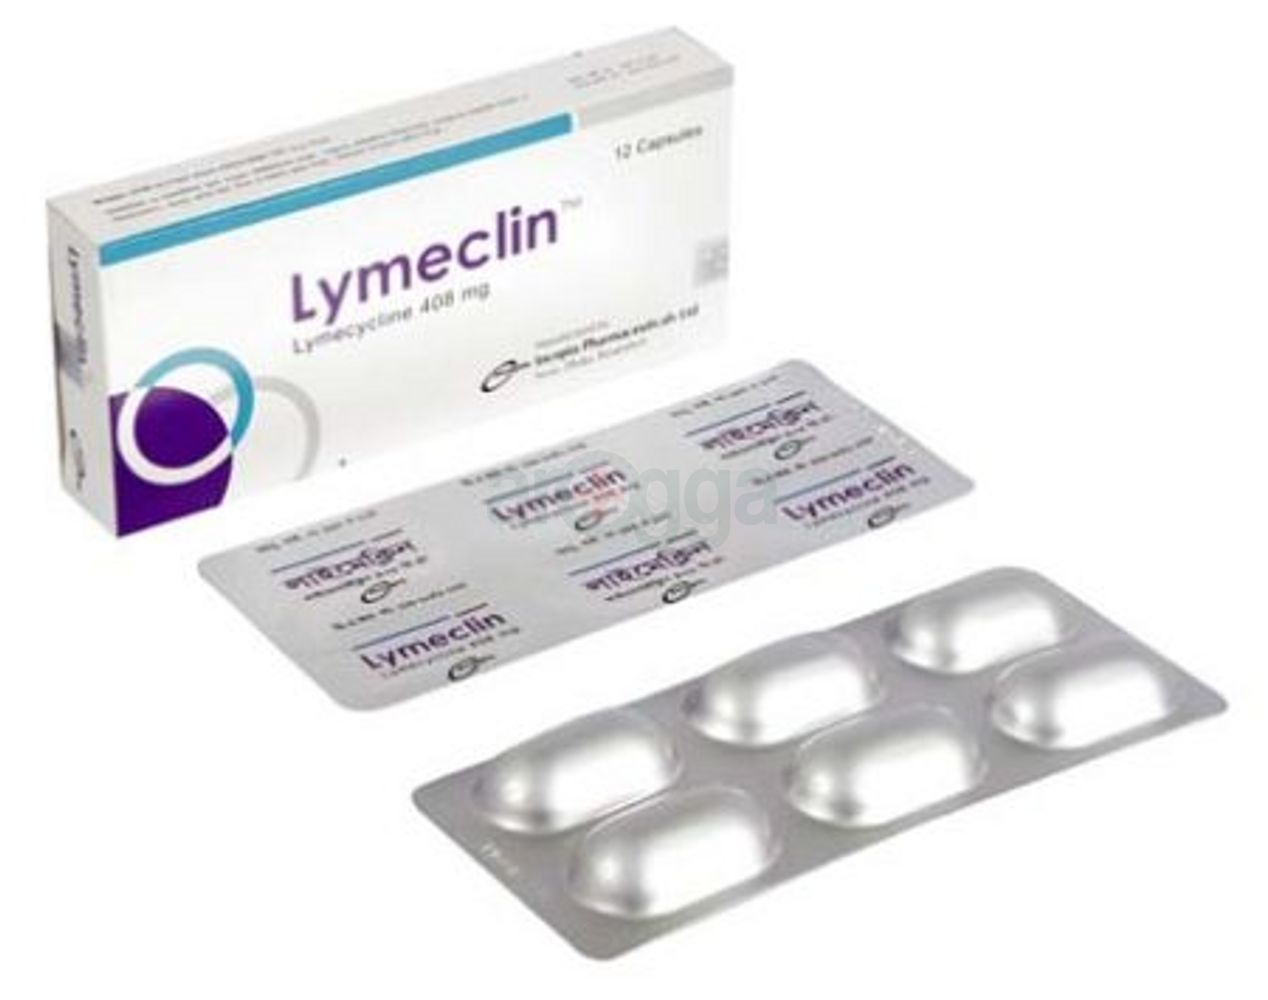 Lymeclin